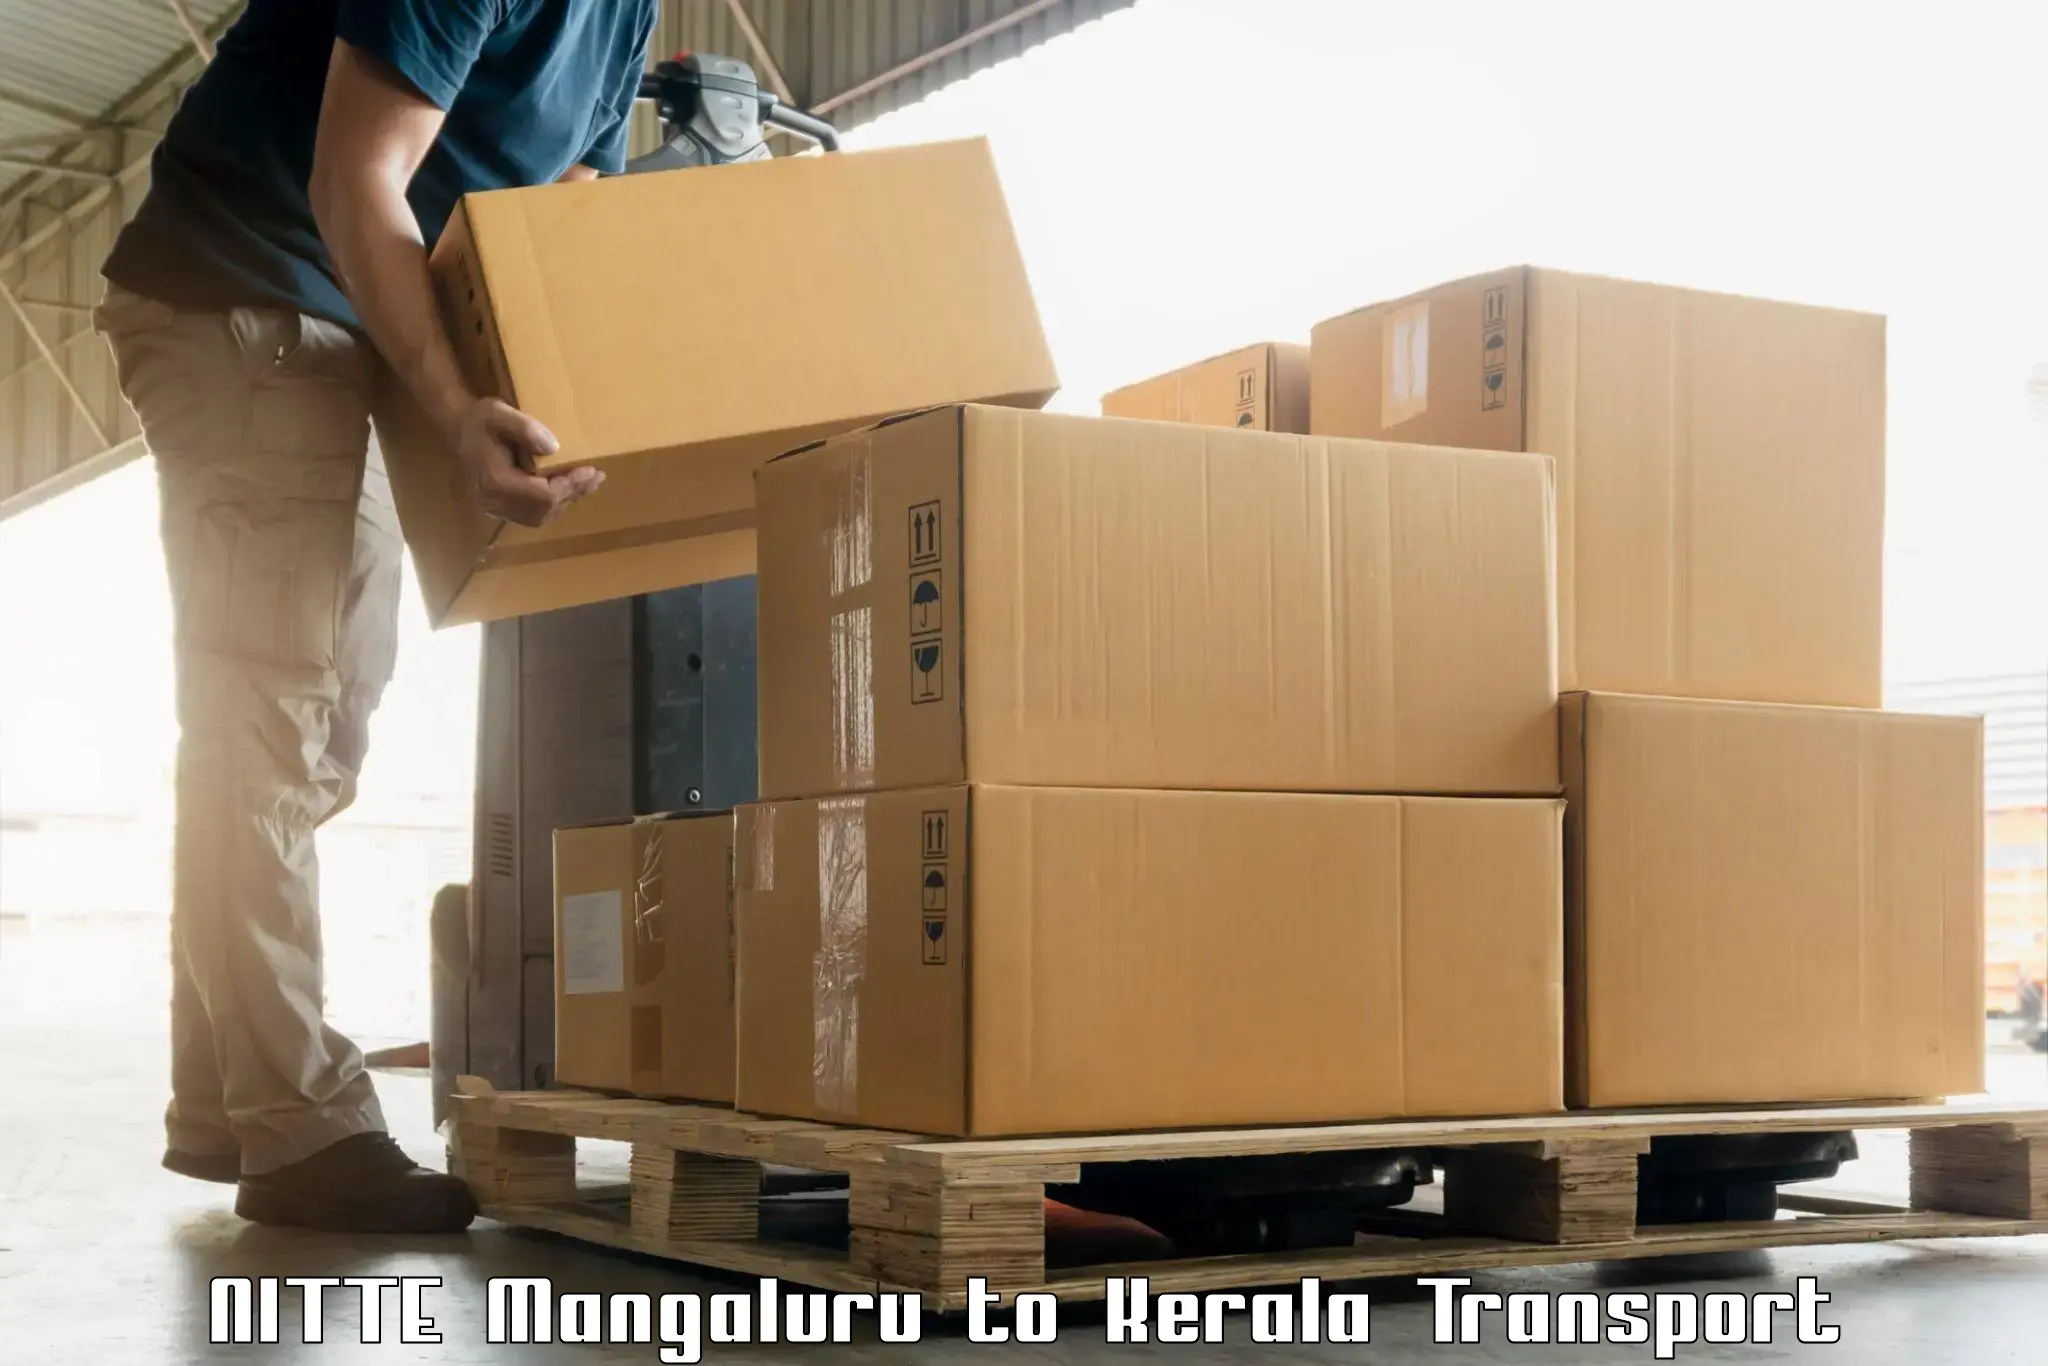 Luggage transport services NITTE Mangaluru to Karukachal